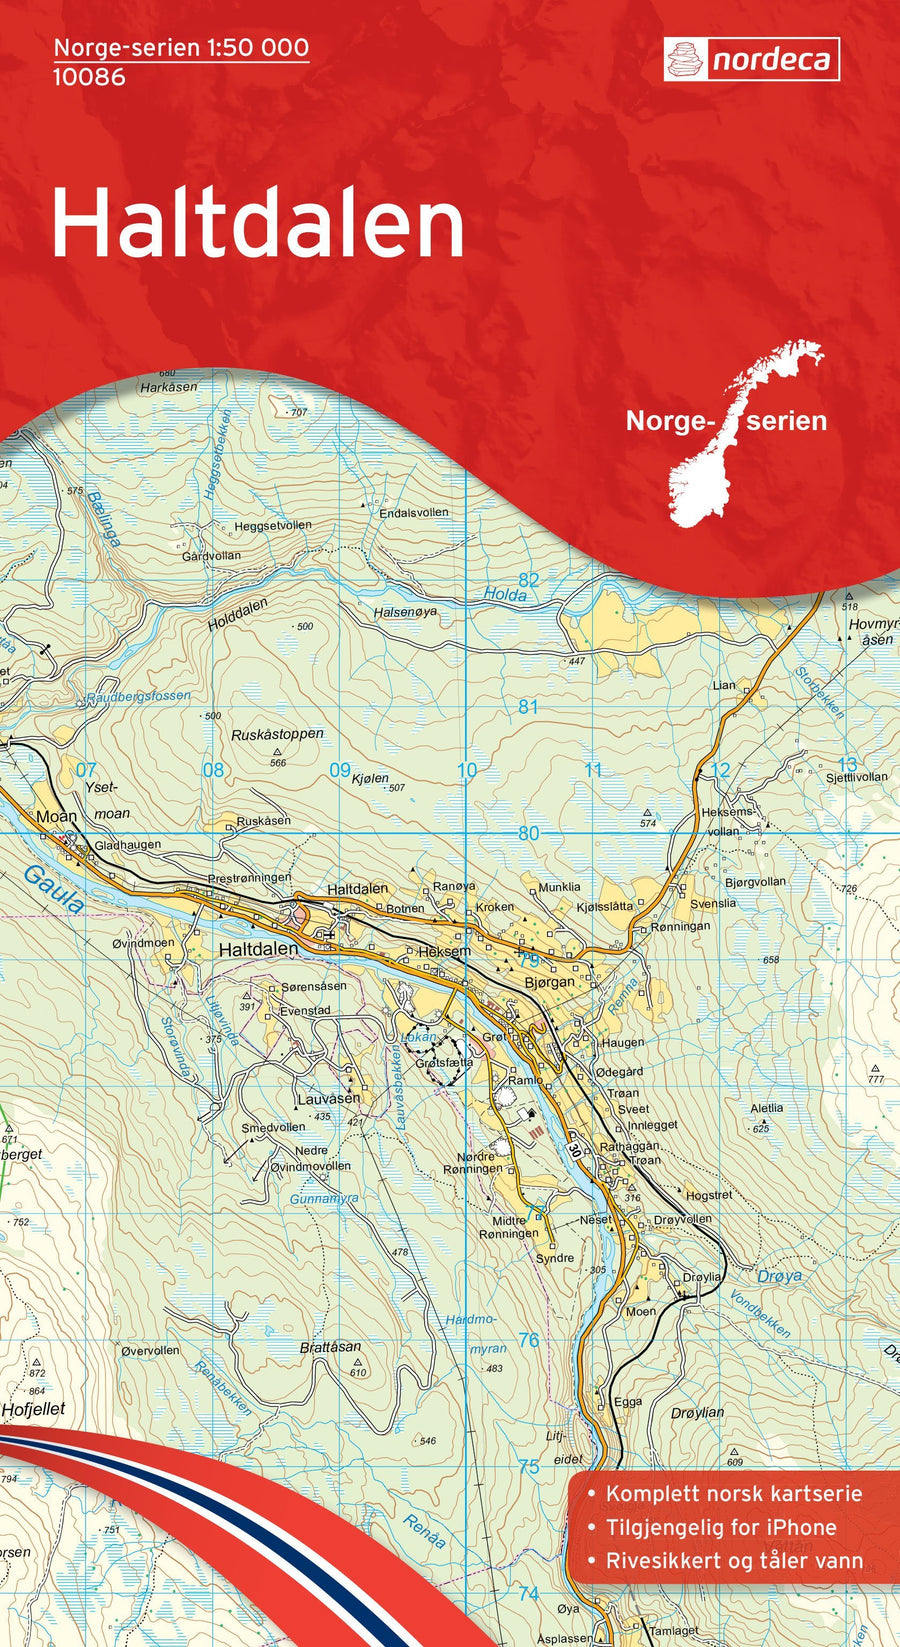 Carte de randonnée n° 10086 - Haltdalen (Norvège) | Nordeca - Norge-serien carte pliée Nordeca 